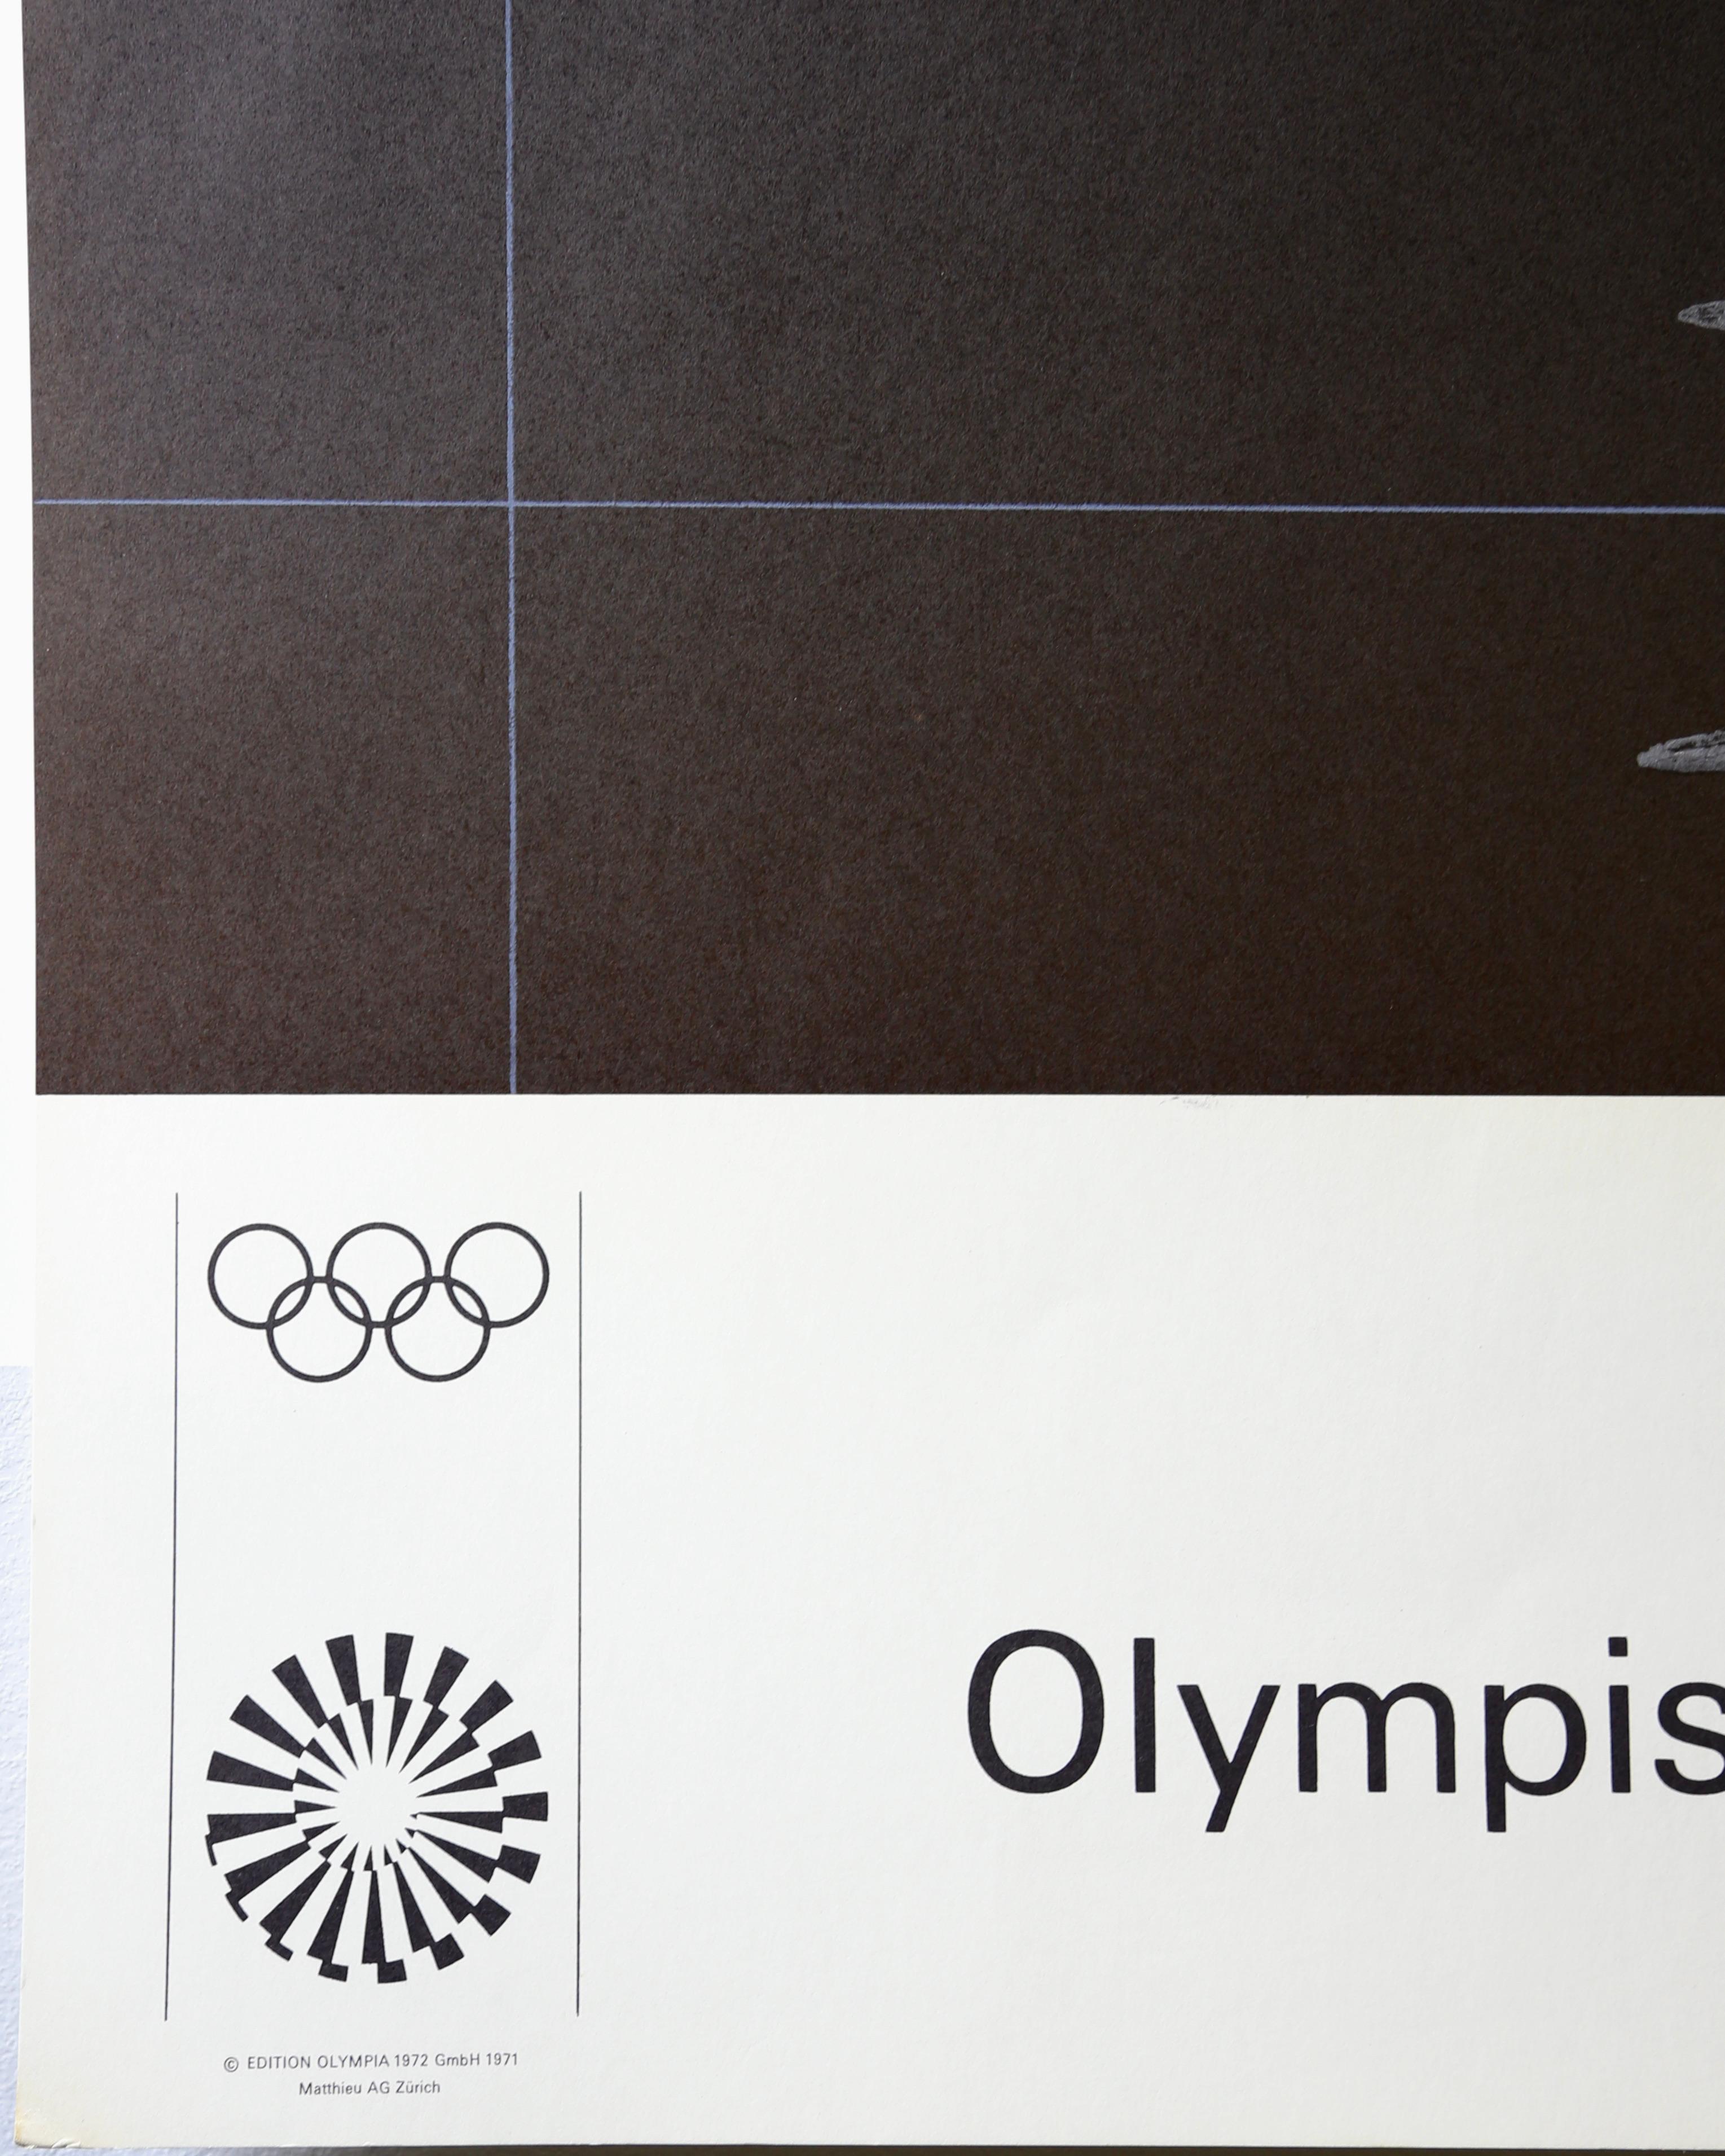 Affiche rétro originale des Jeux olympiques de 1972 - Paul Wunderlich 